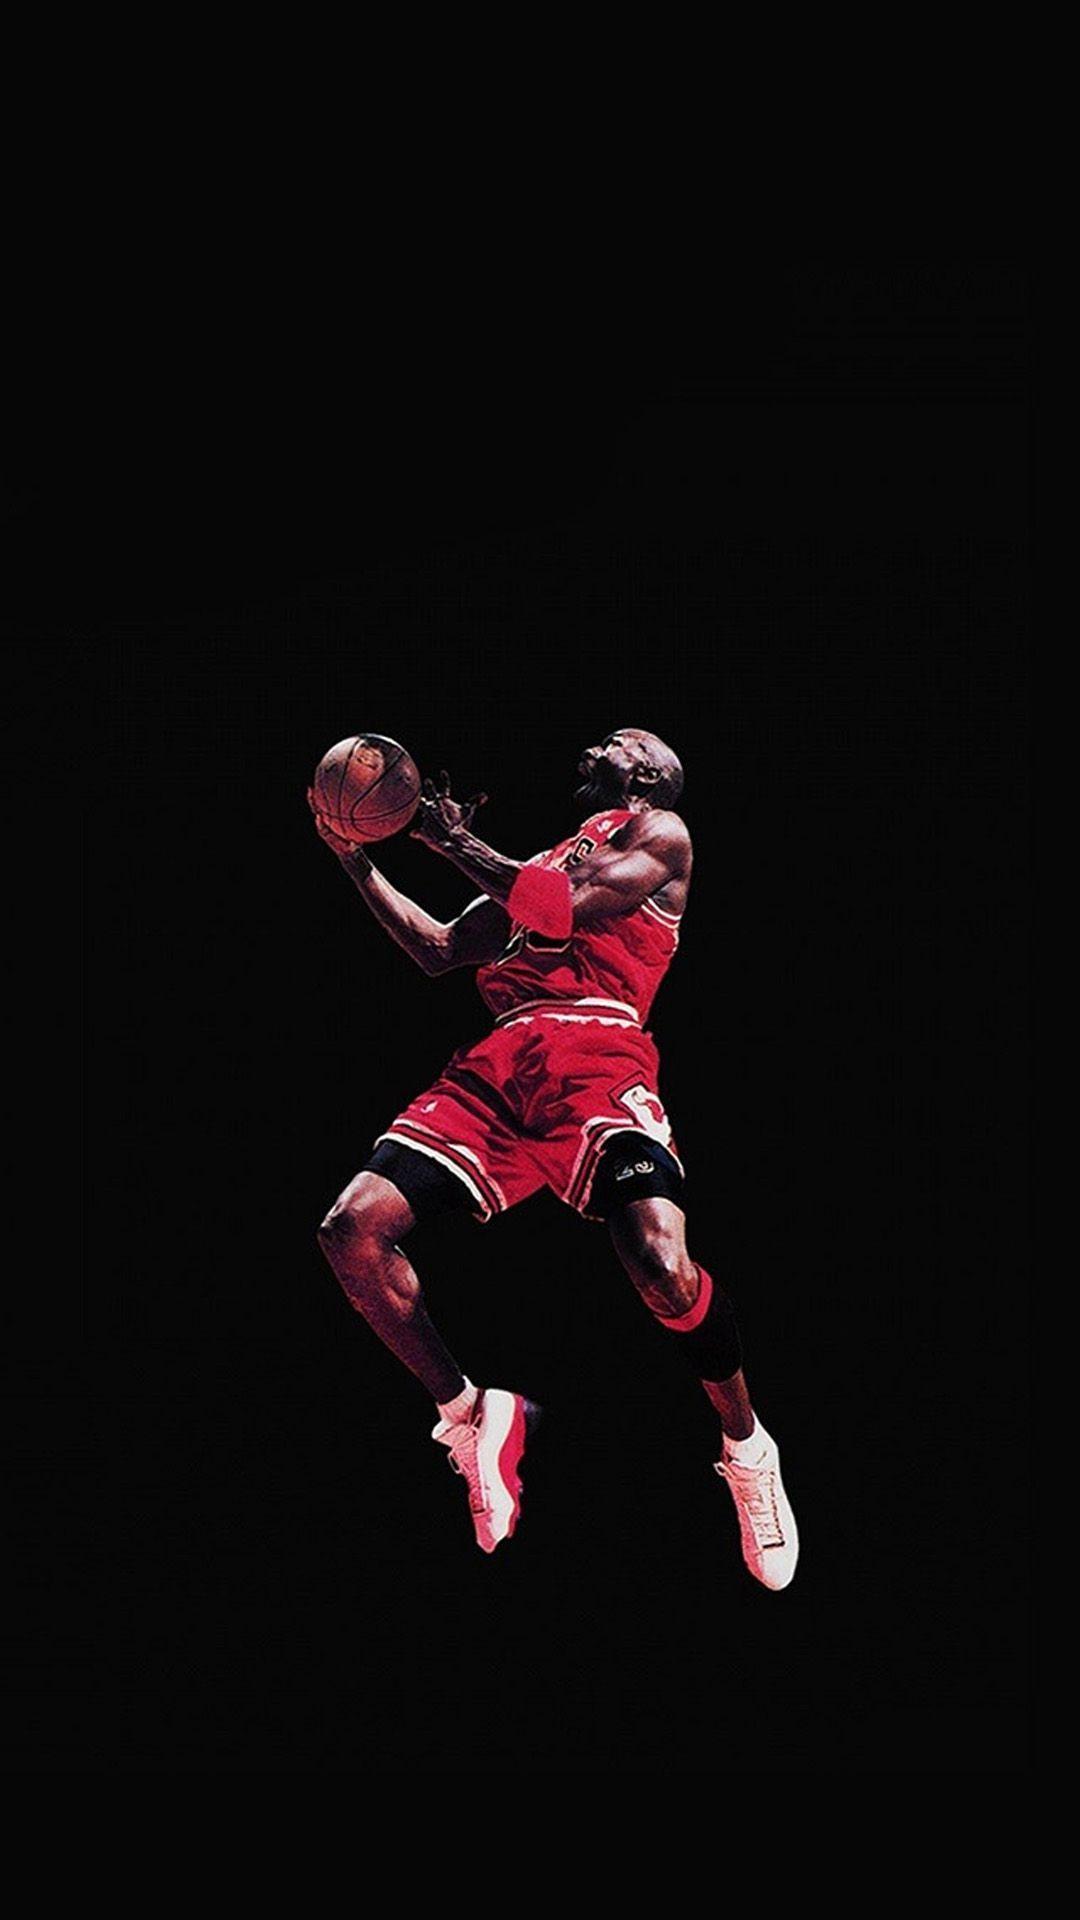 Air Jordan Wallpaper, 100% Full HDQ Air Jordan Picture